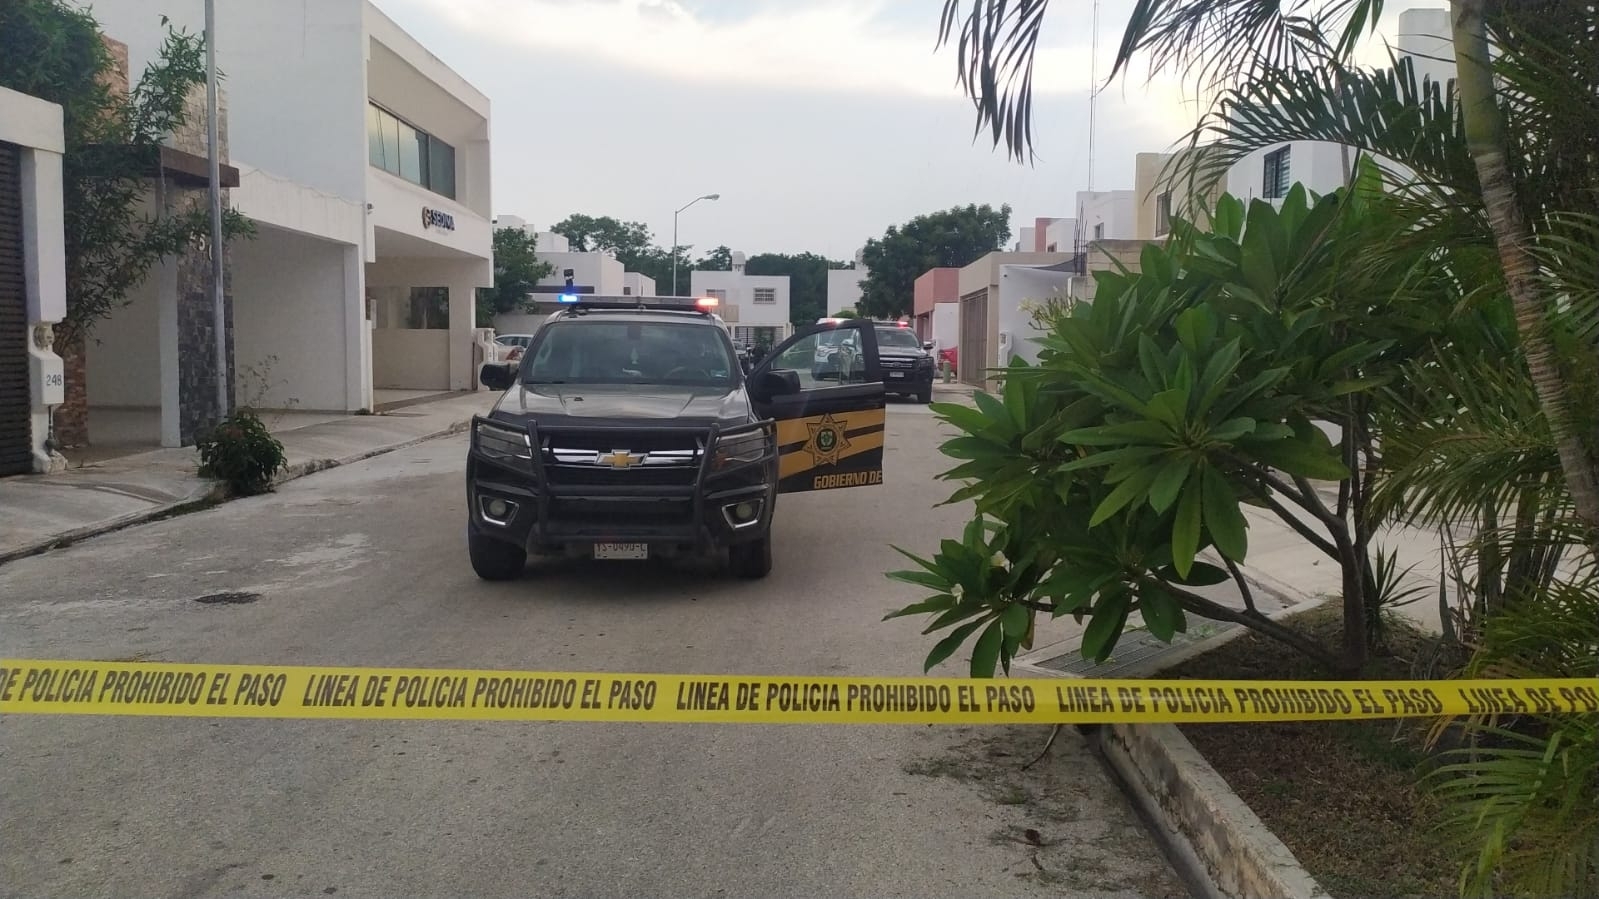 Cierran caso de feminicidio al Norte de Mérida; el responsable se suicidó